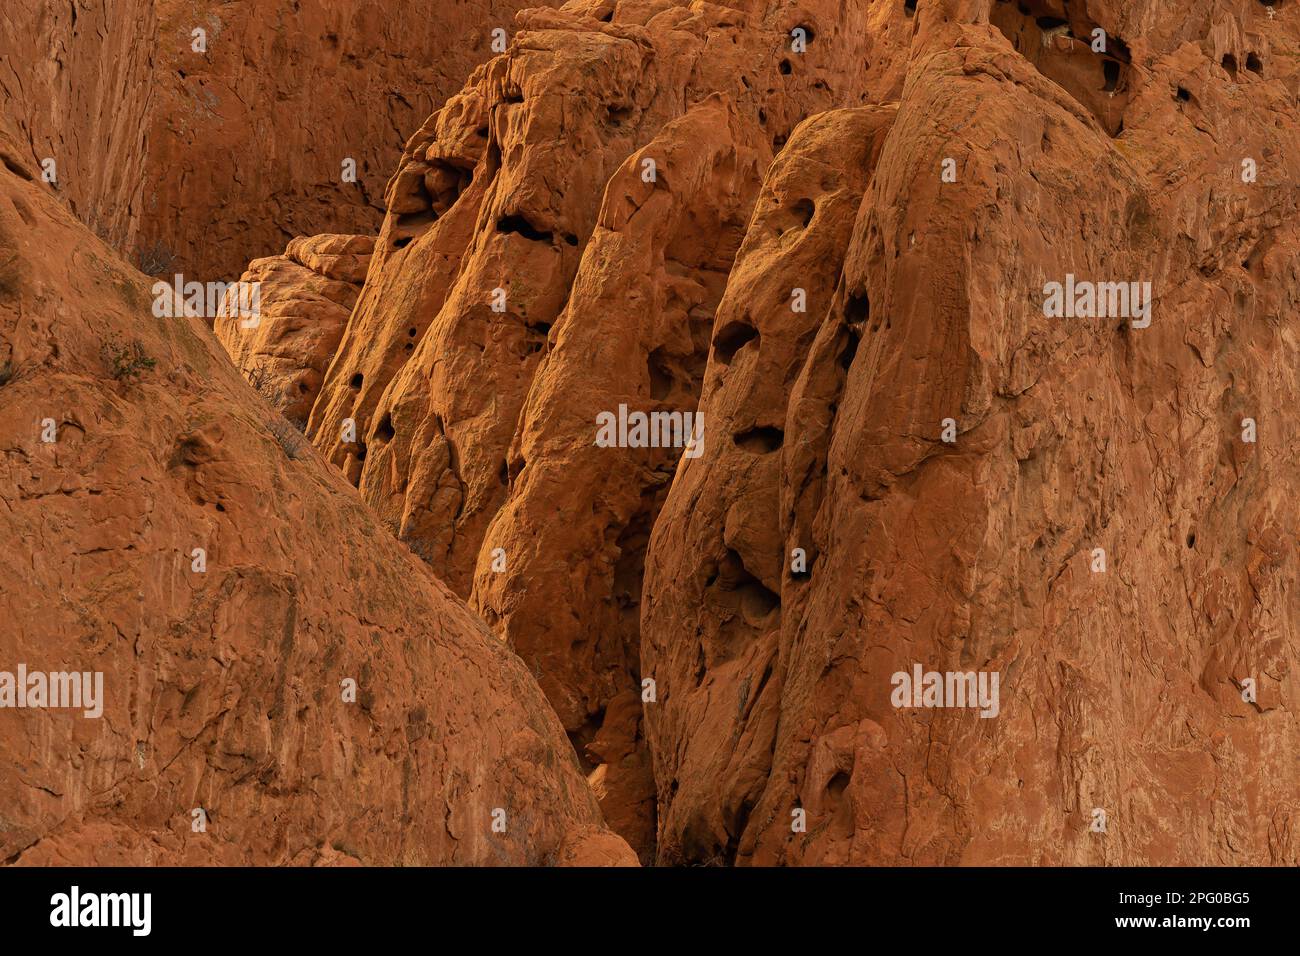 Rote Sandsteinfelsen mit interessanter Textur, Gruben, Stechspuren, Wind- und Wassererosion, Spalten, glatten Kanten, Bäume, die Flossen der Felsen wachsen Stockfoto